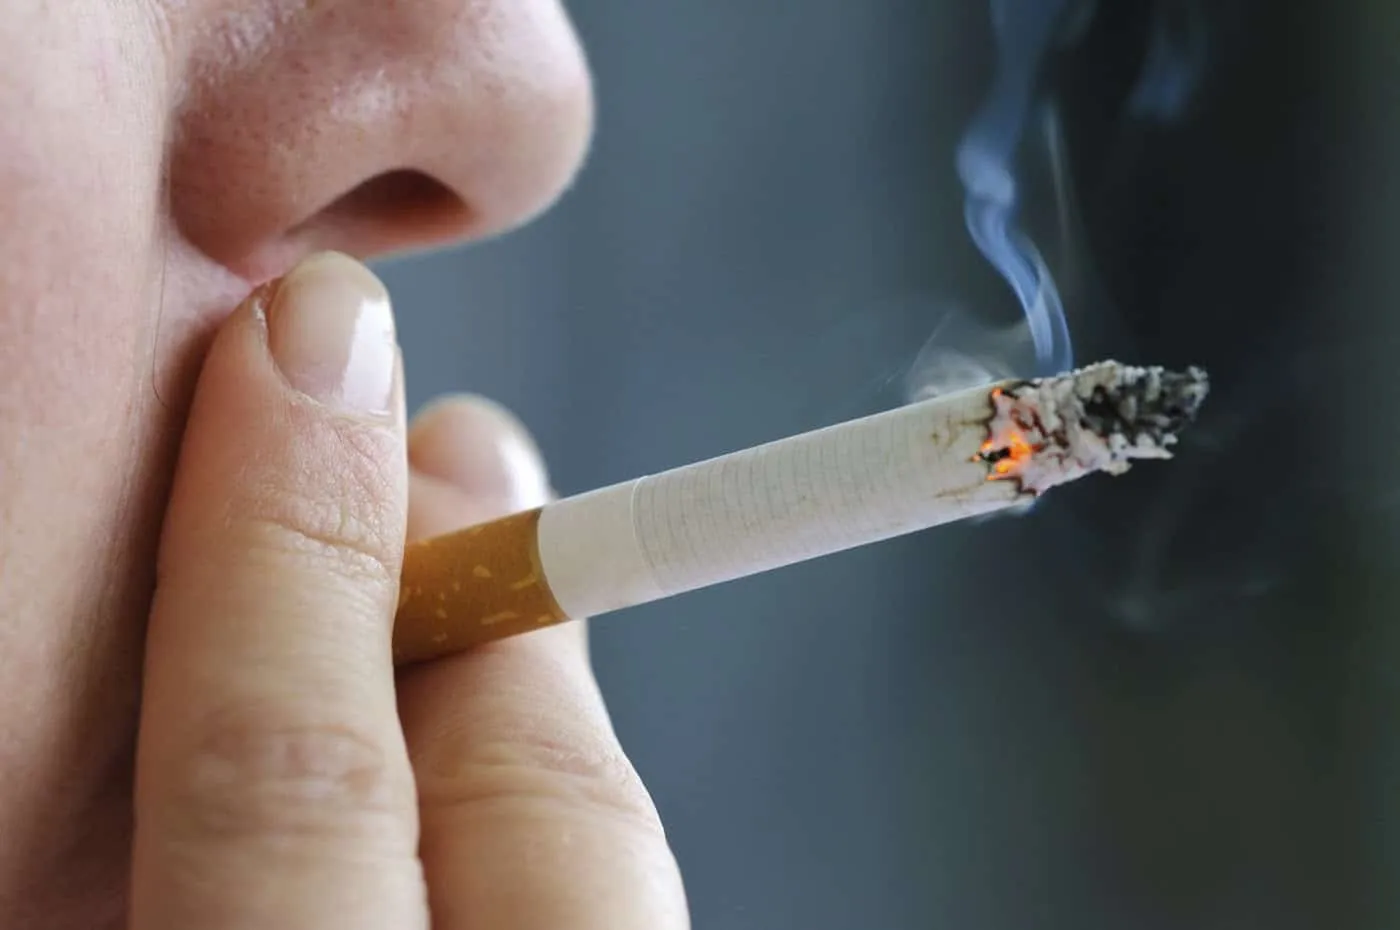 nguyên nhân chính gây ung thư thực quản là do thuốc lá